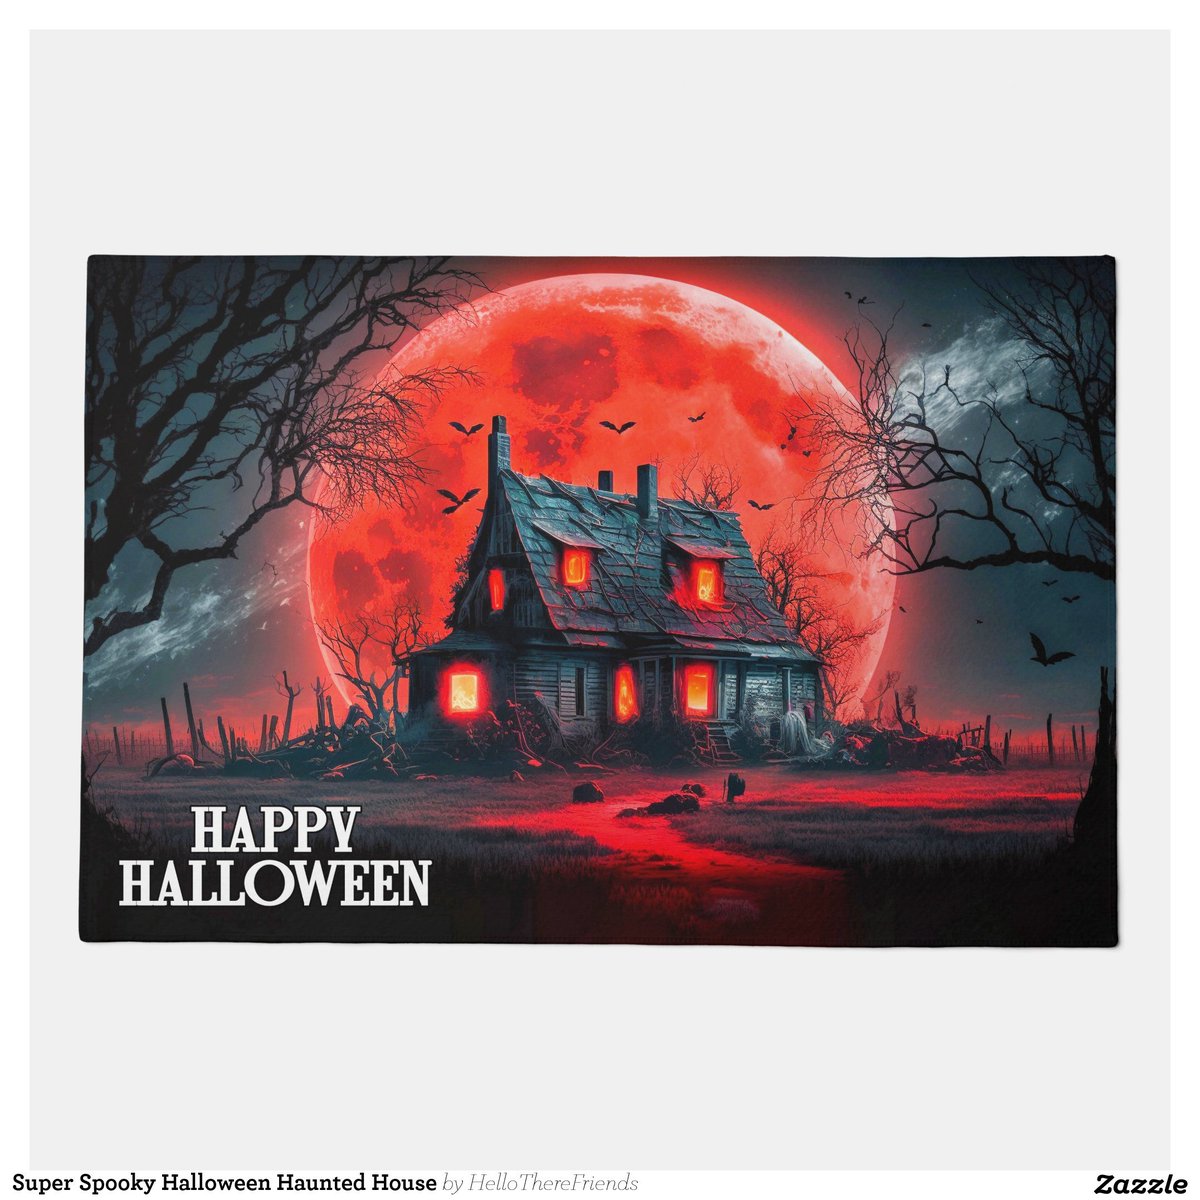 Super Spooky Halloween Haunted House Doormat→zazzle.com/z/9y4sm9wc?rf=…

#WelcomeMat #WelcomeDoormat #HappyHalloween #Halloween2024 #Spooky #TrickOrTreat #HauntedHouse #HomeDecor #HolidayDecor #Zazzlemade